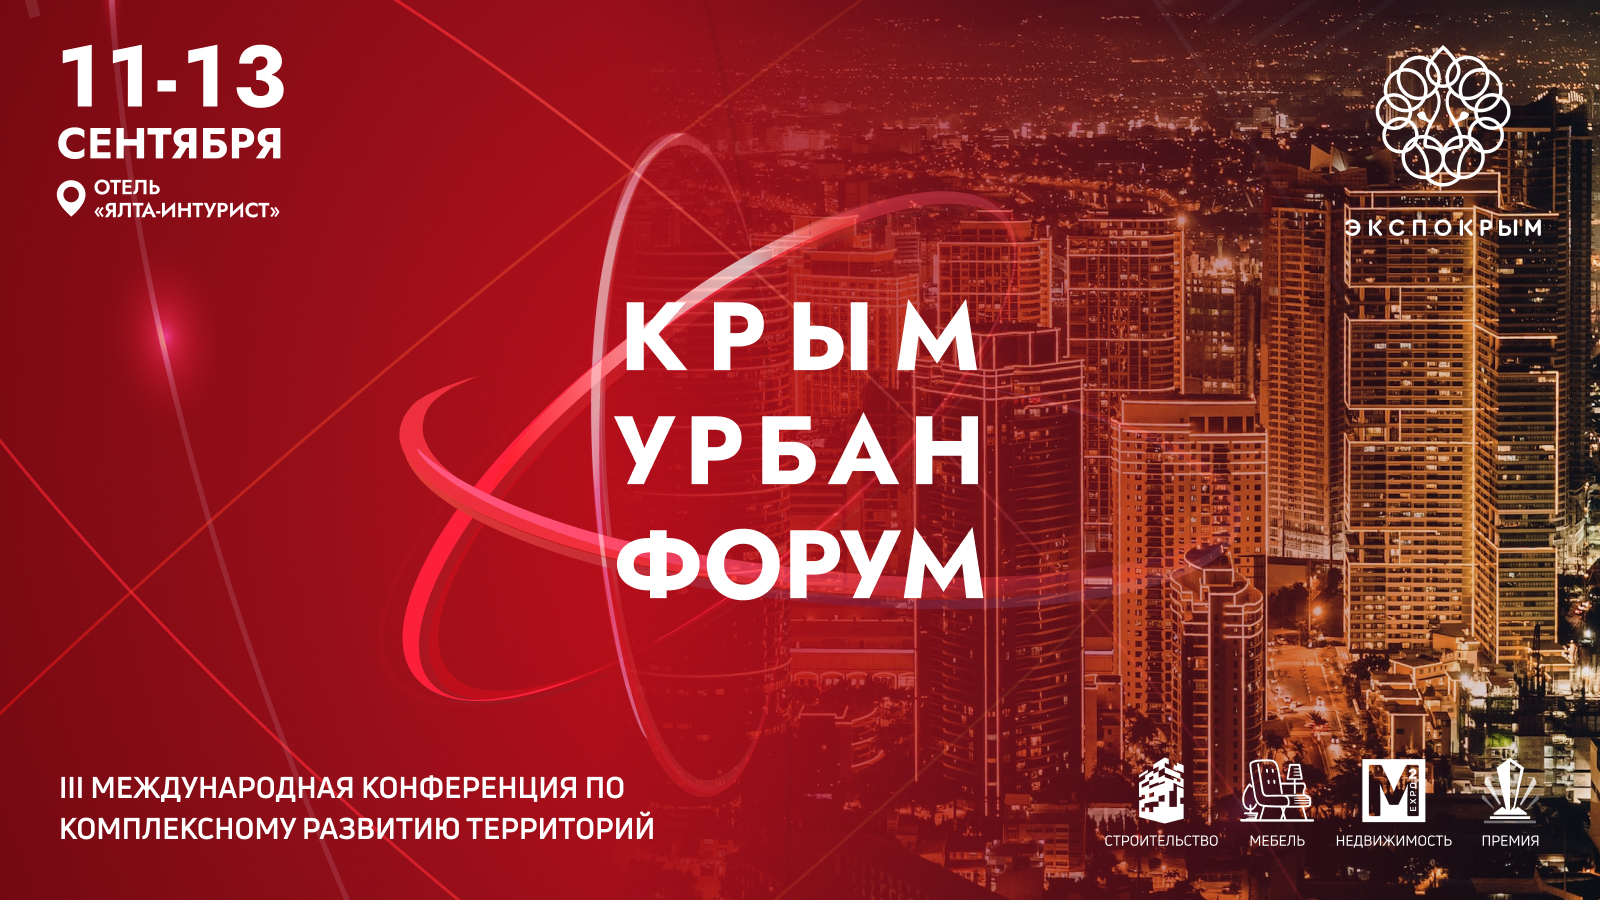 III Международная конференция по комплексному развитию территорий полуострова «Крым Урбан Форум» пройдет при поддержке РСС